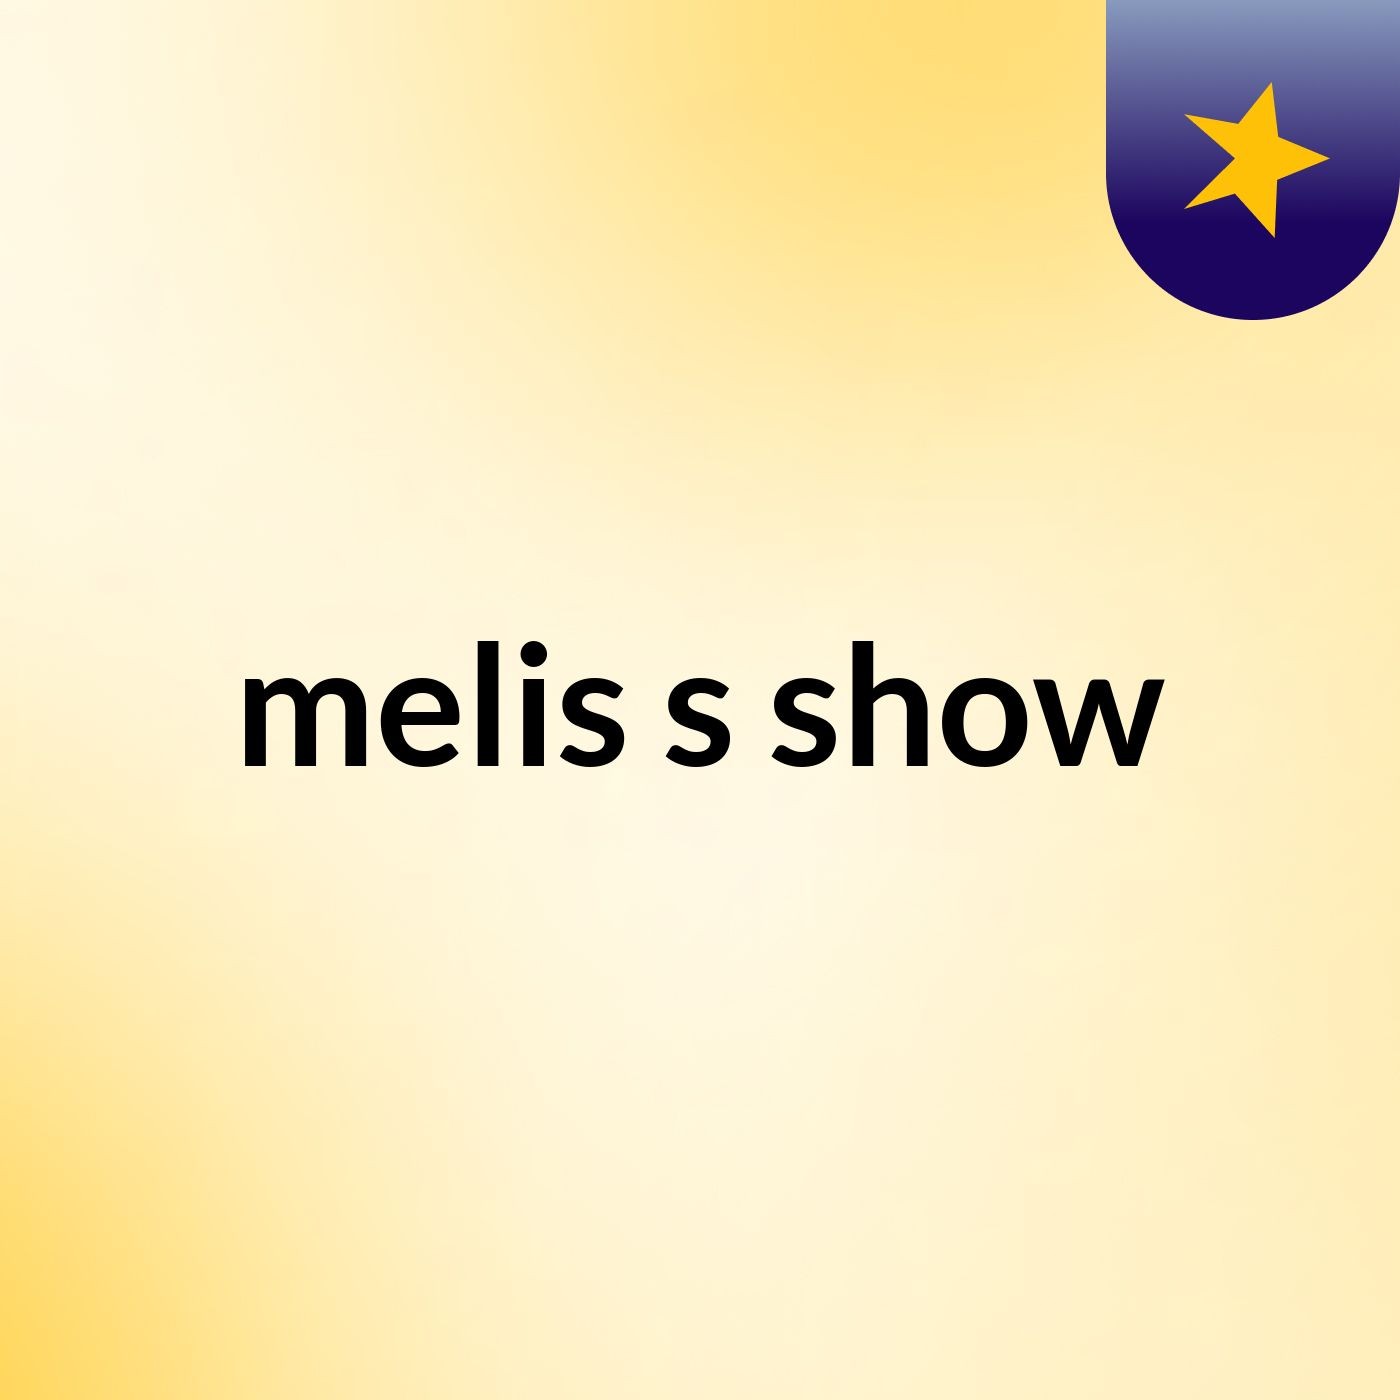 melis's show